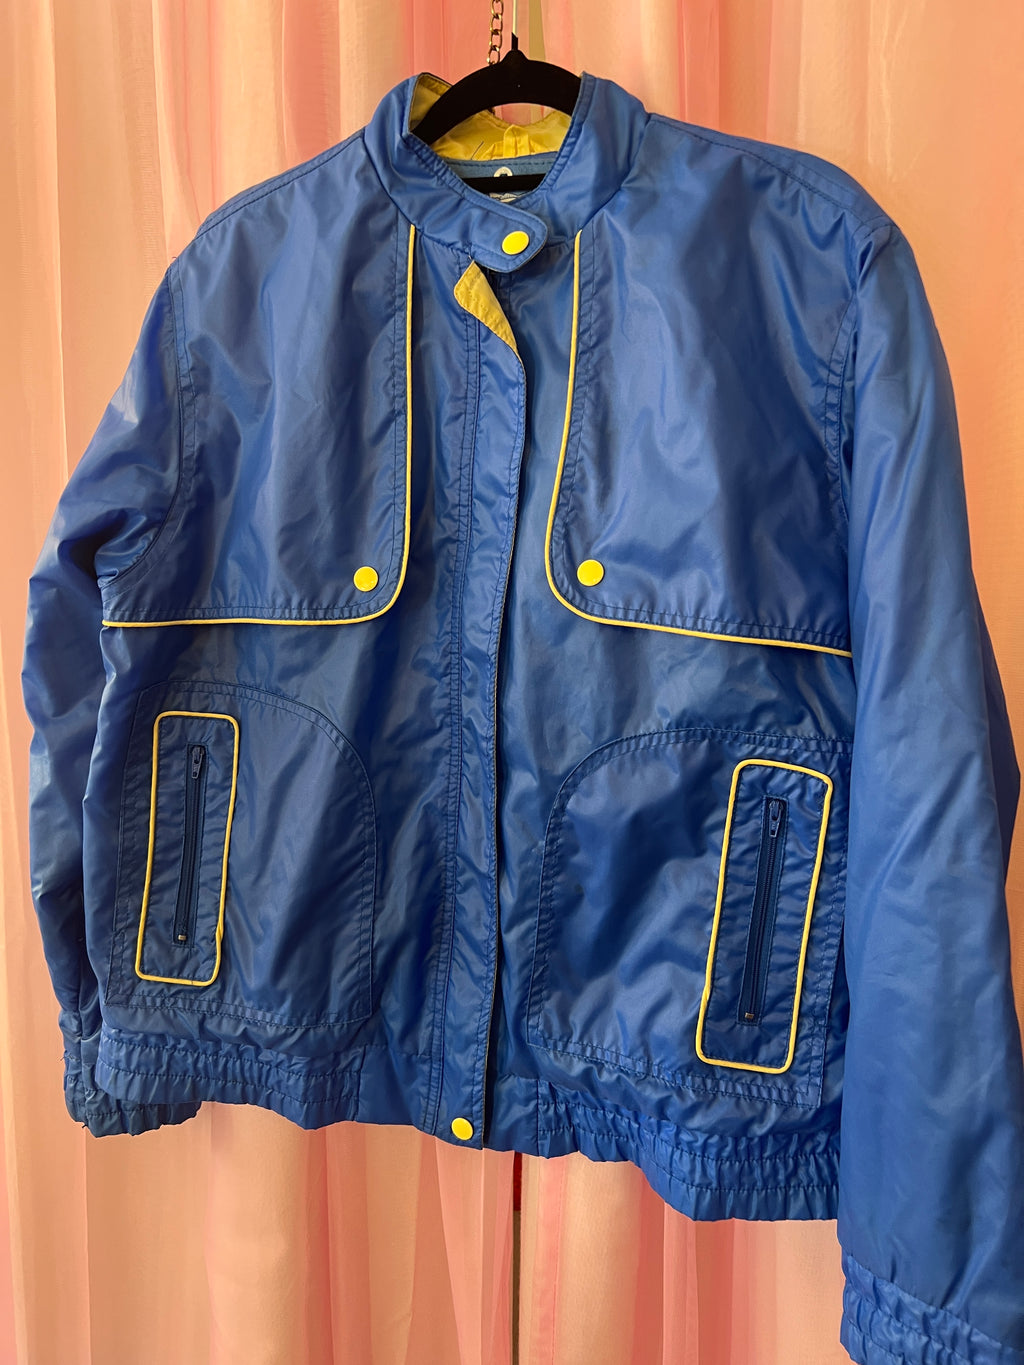 Vintage 80’s Rain Jacket